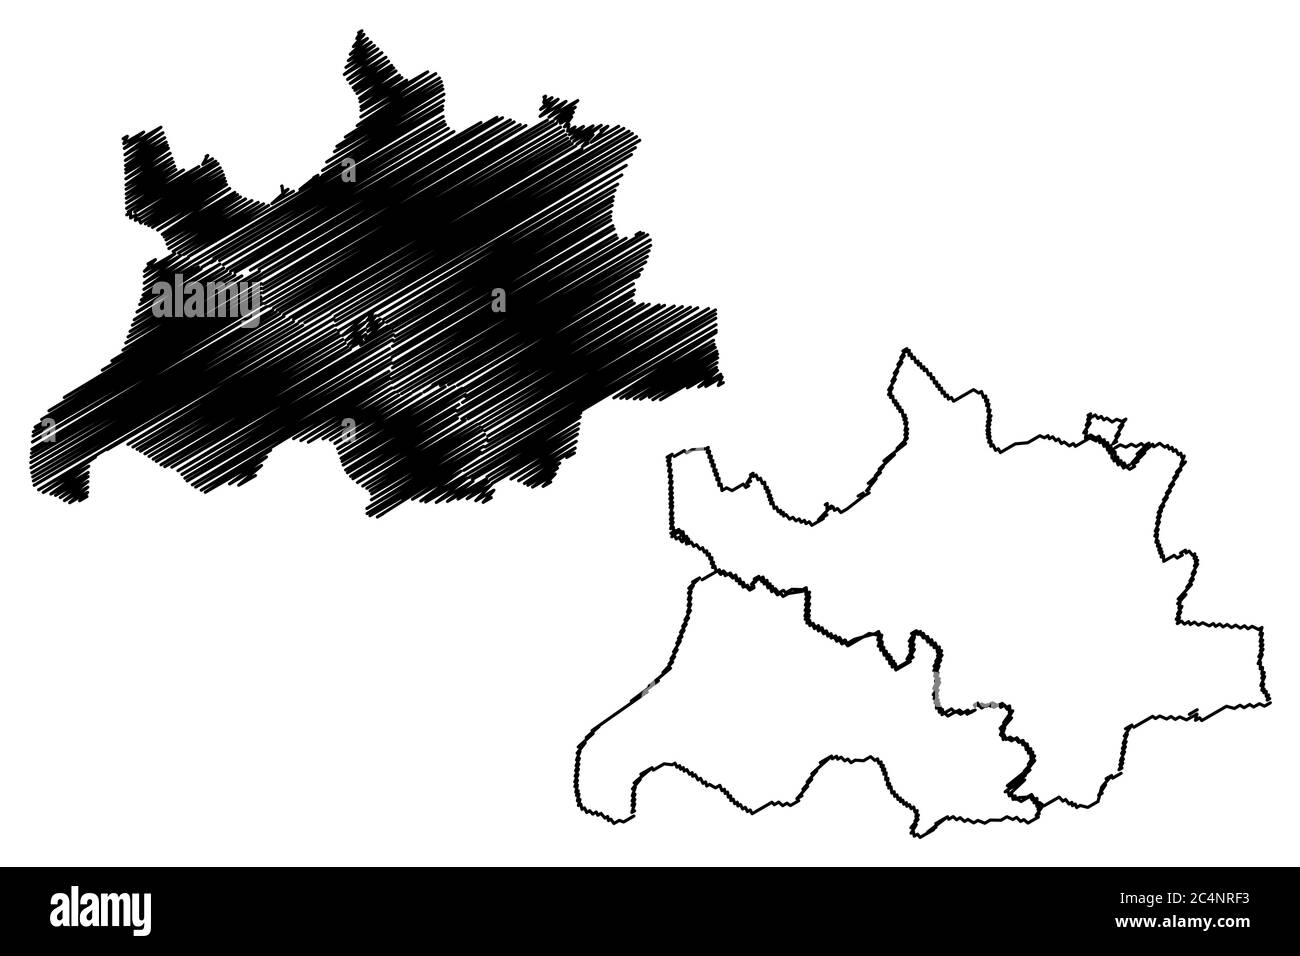 How to draw maharashtra map | Maharashtra map drawing easy - YouTube